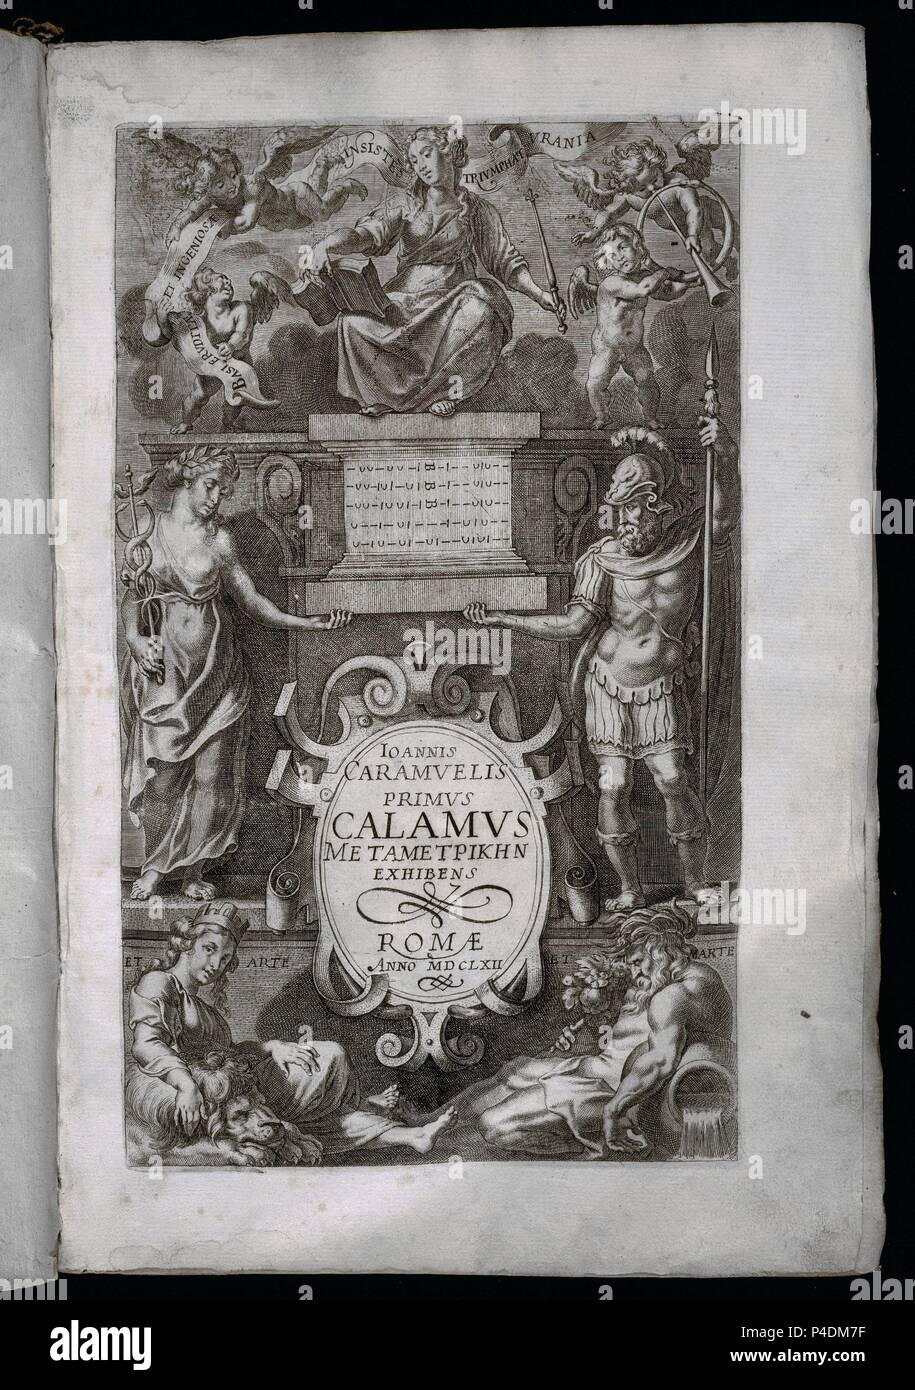 PRIMUS CALAMUS METAMETPIKHN EXHIBENS ROMA - AÑO 1662 - PAGINA CON GRABADO. Author: CARAMUEL JUAN. Location: CONGRESO DE LOS DIPUTADOS-BIBLIOTECA, MADRID, SPAIN. Stock Photo